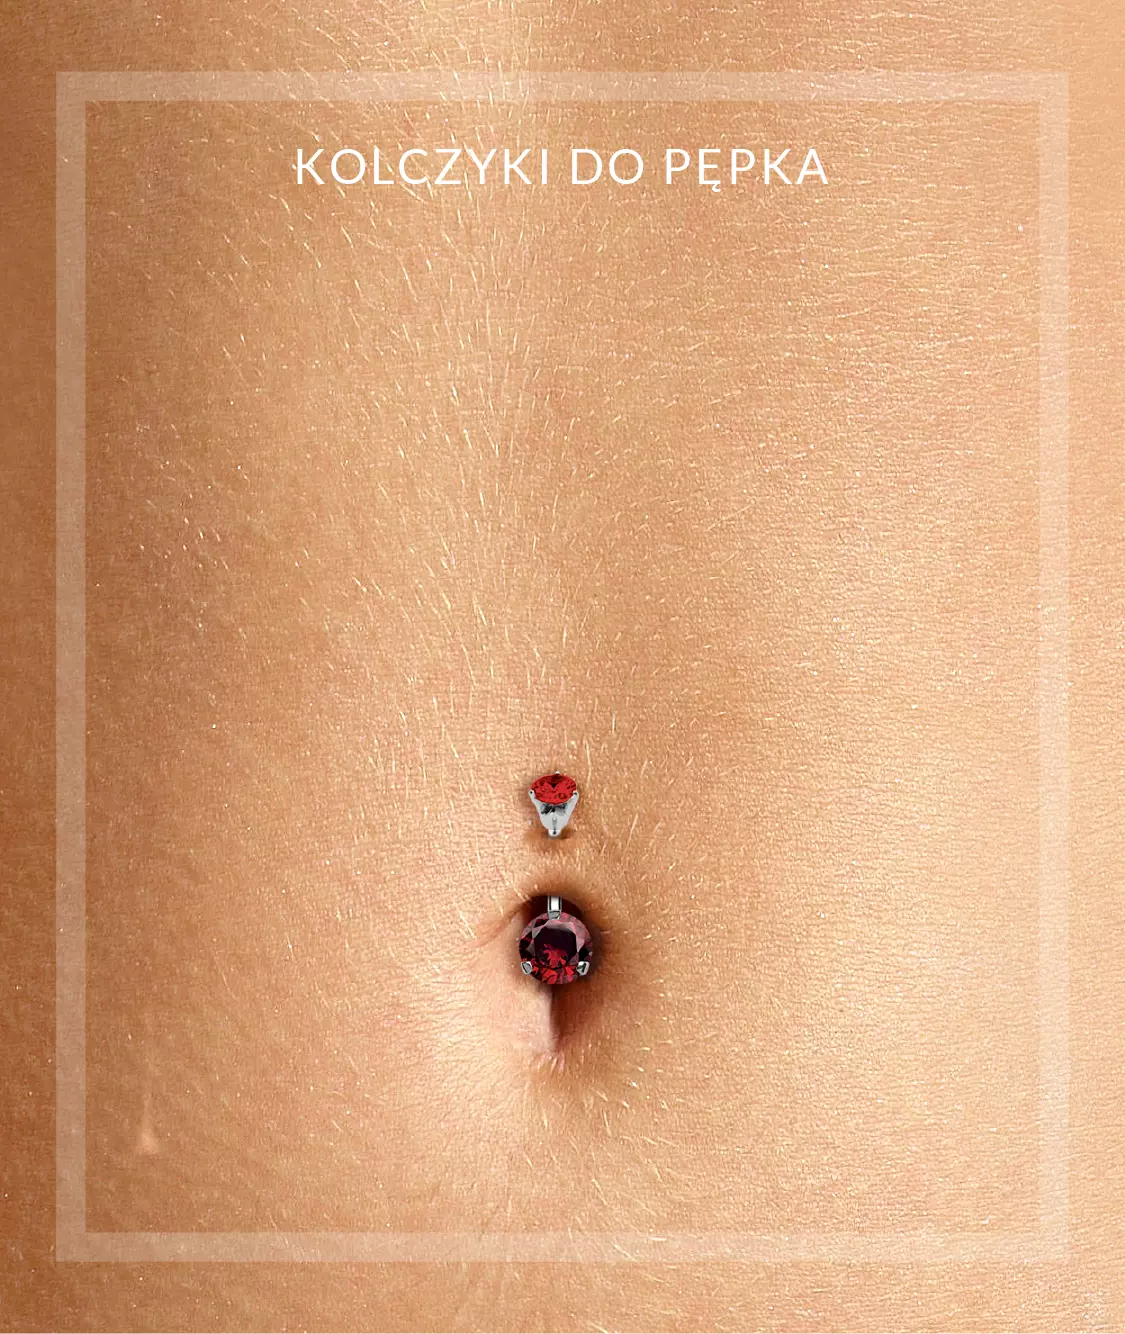 Kolczyki do pępka w Piercingi.pl